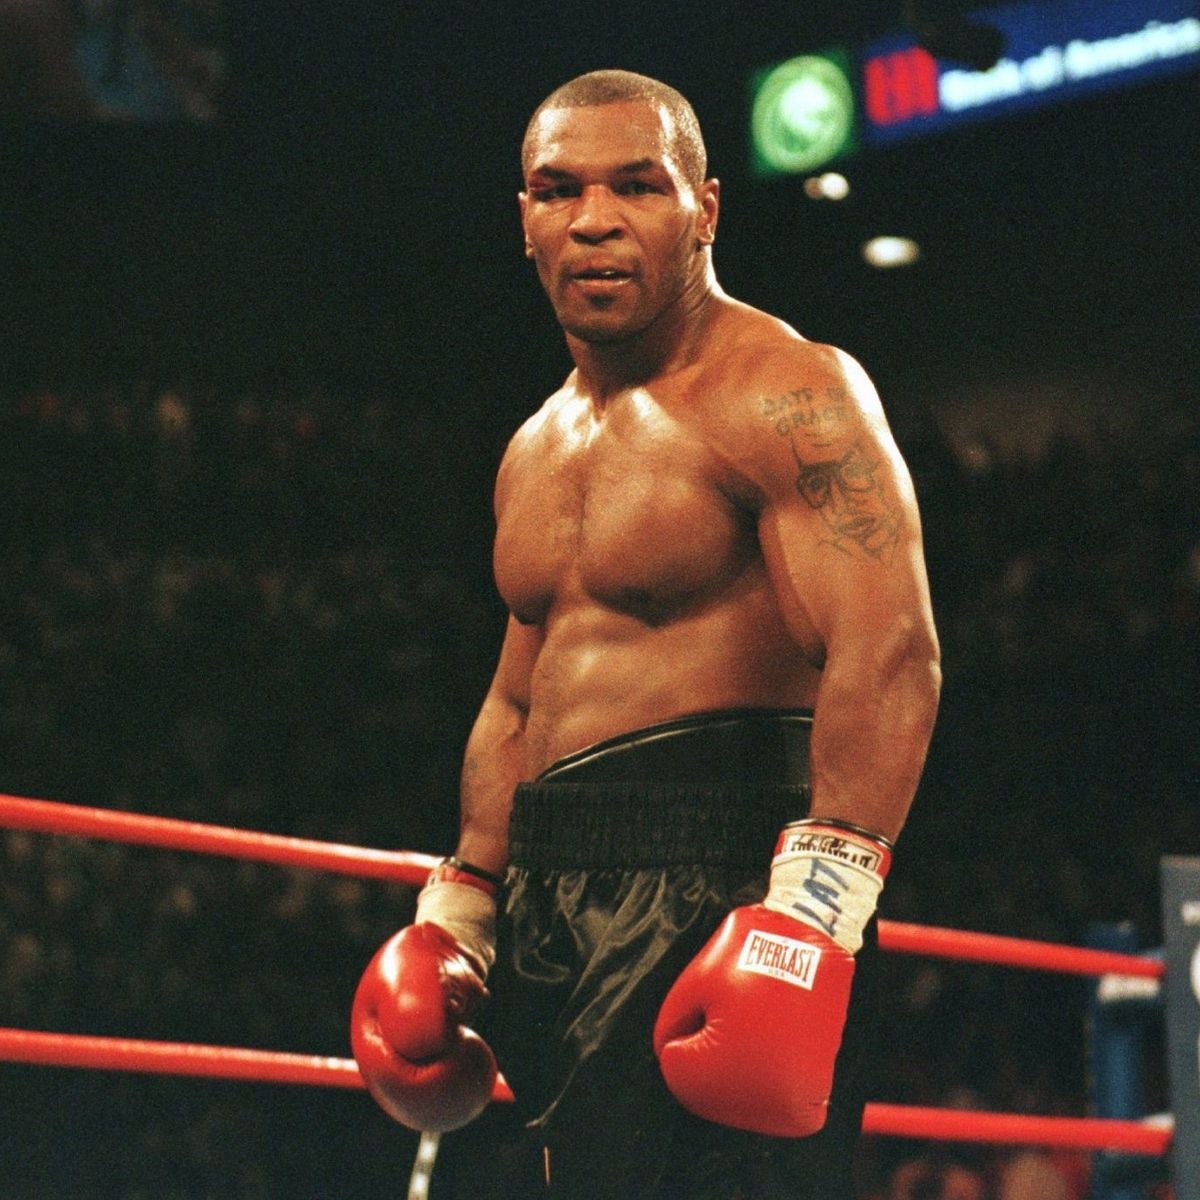 1 Mike Tyson versus Evander Holyfield